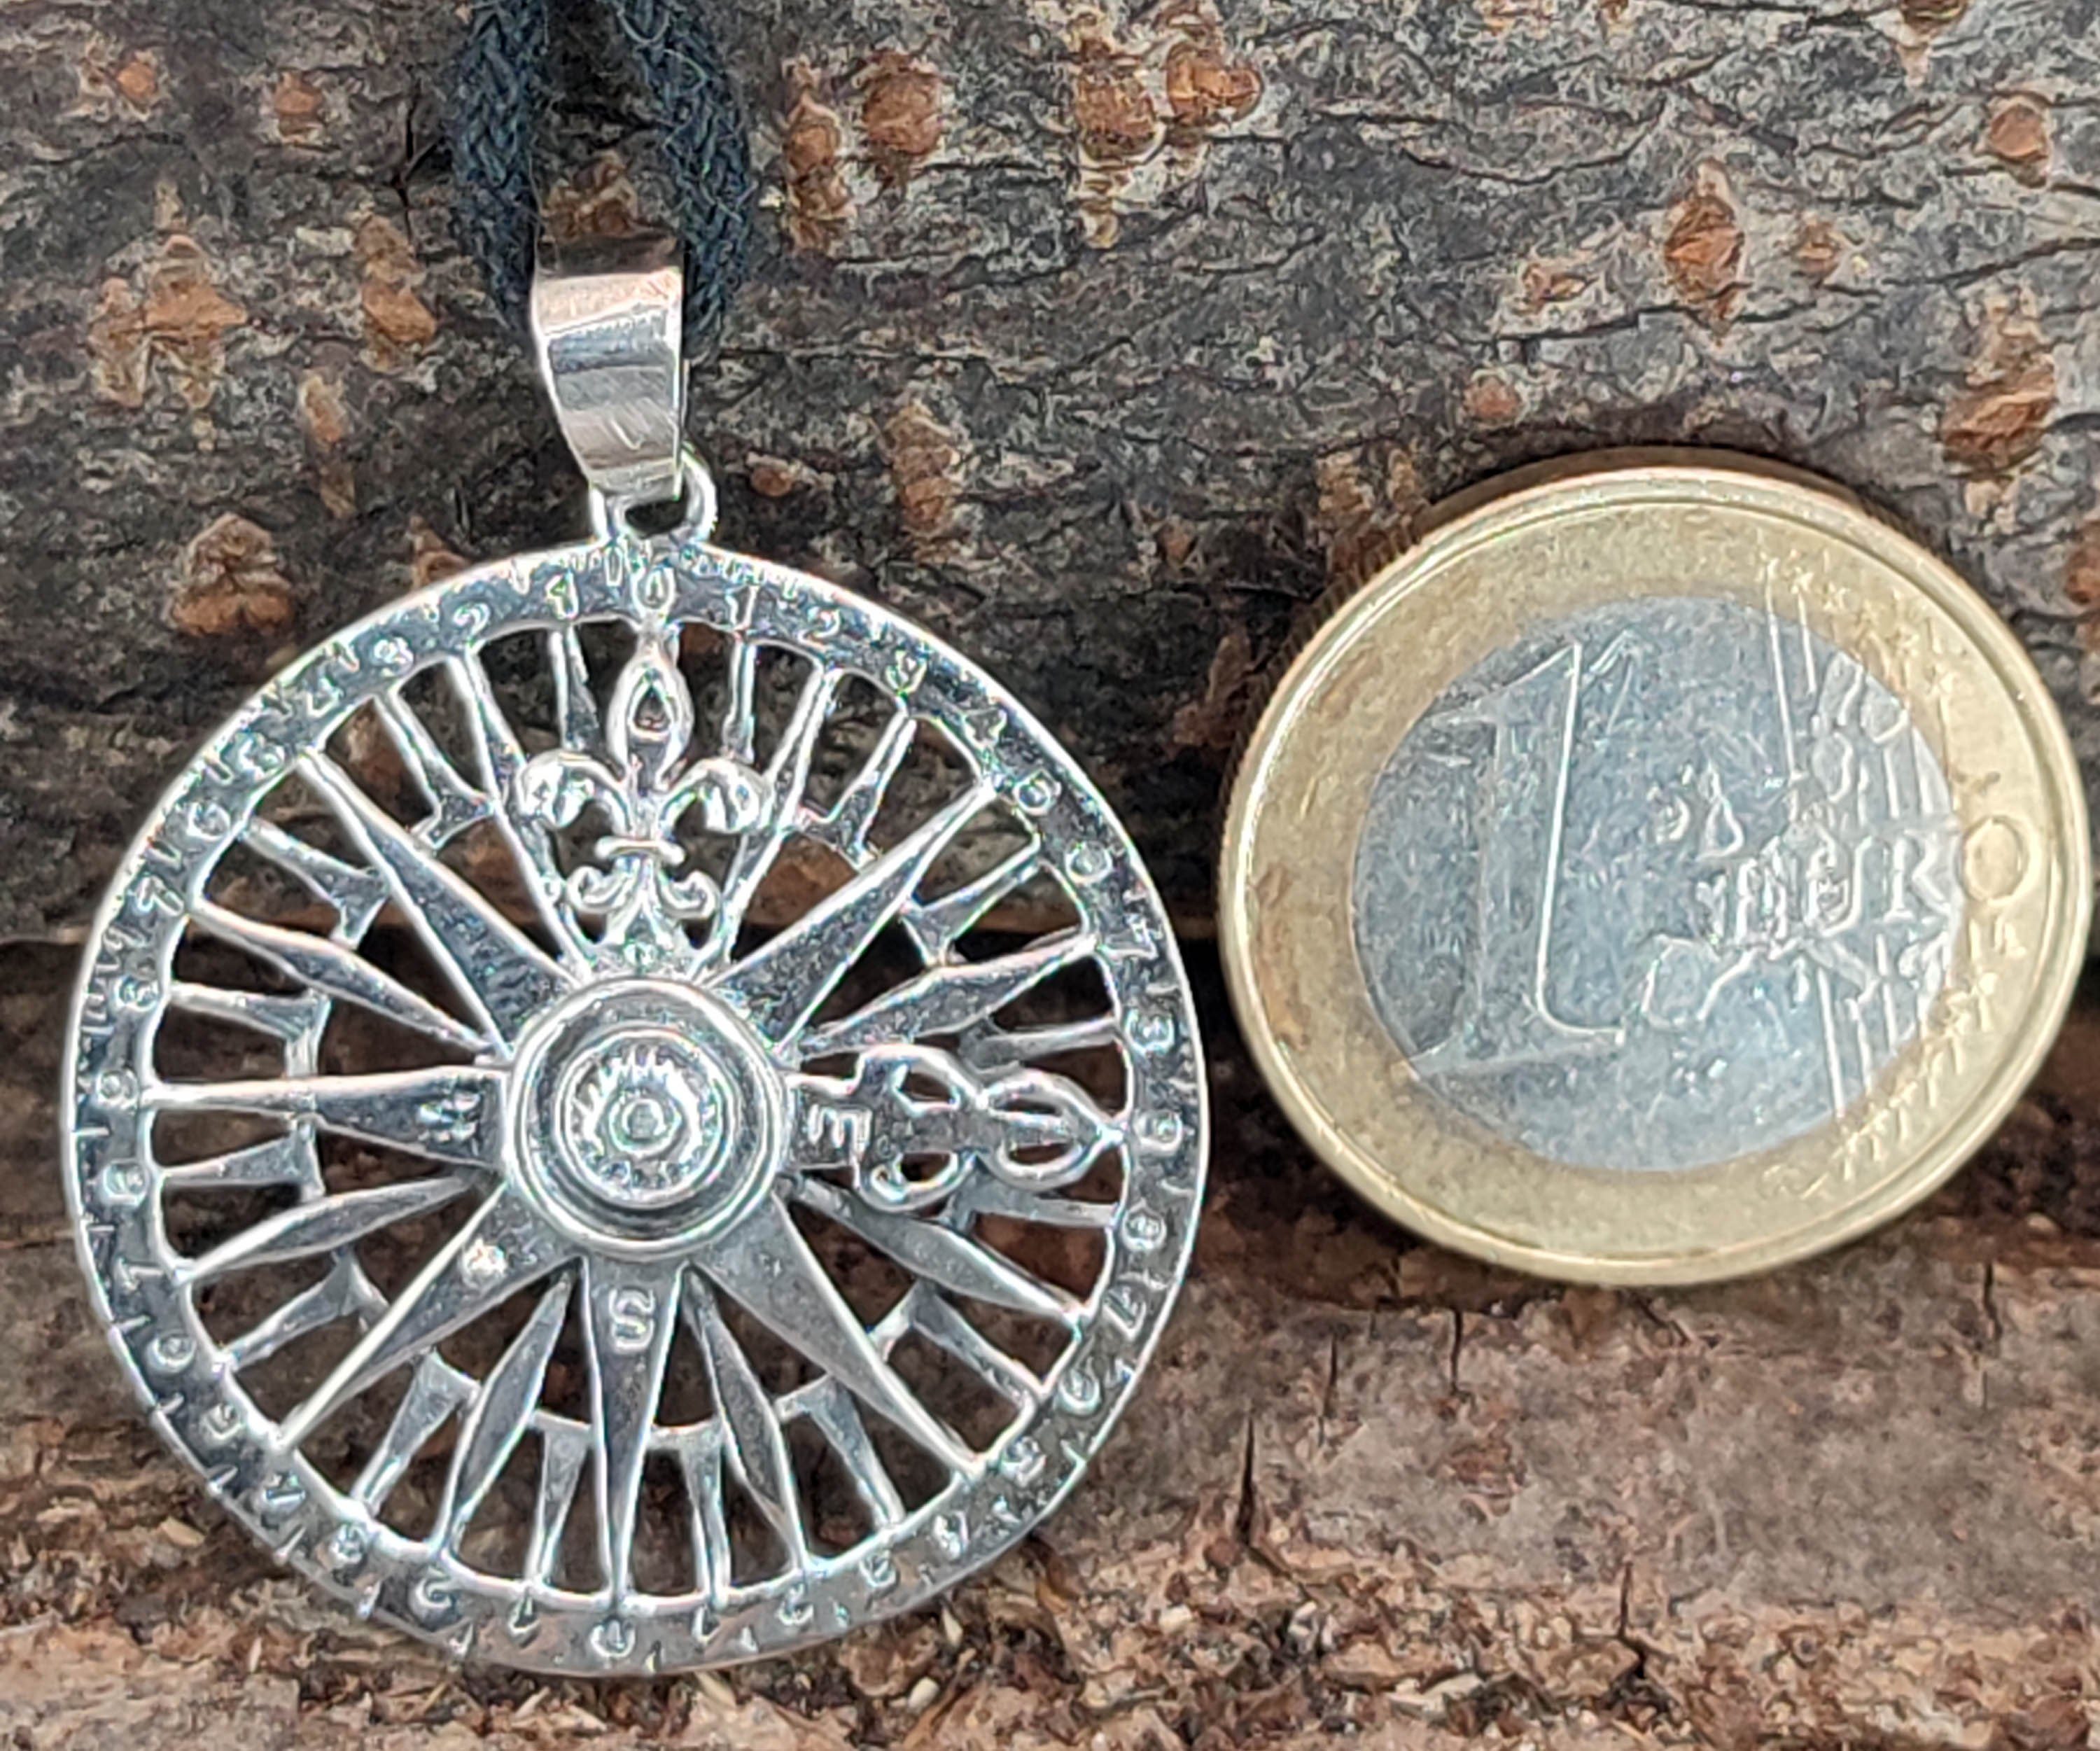 Leather Sterling Silber Windrose Kompass Fleur-de-Lys Anhänger Kettenanhänger of 925 Kiss